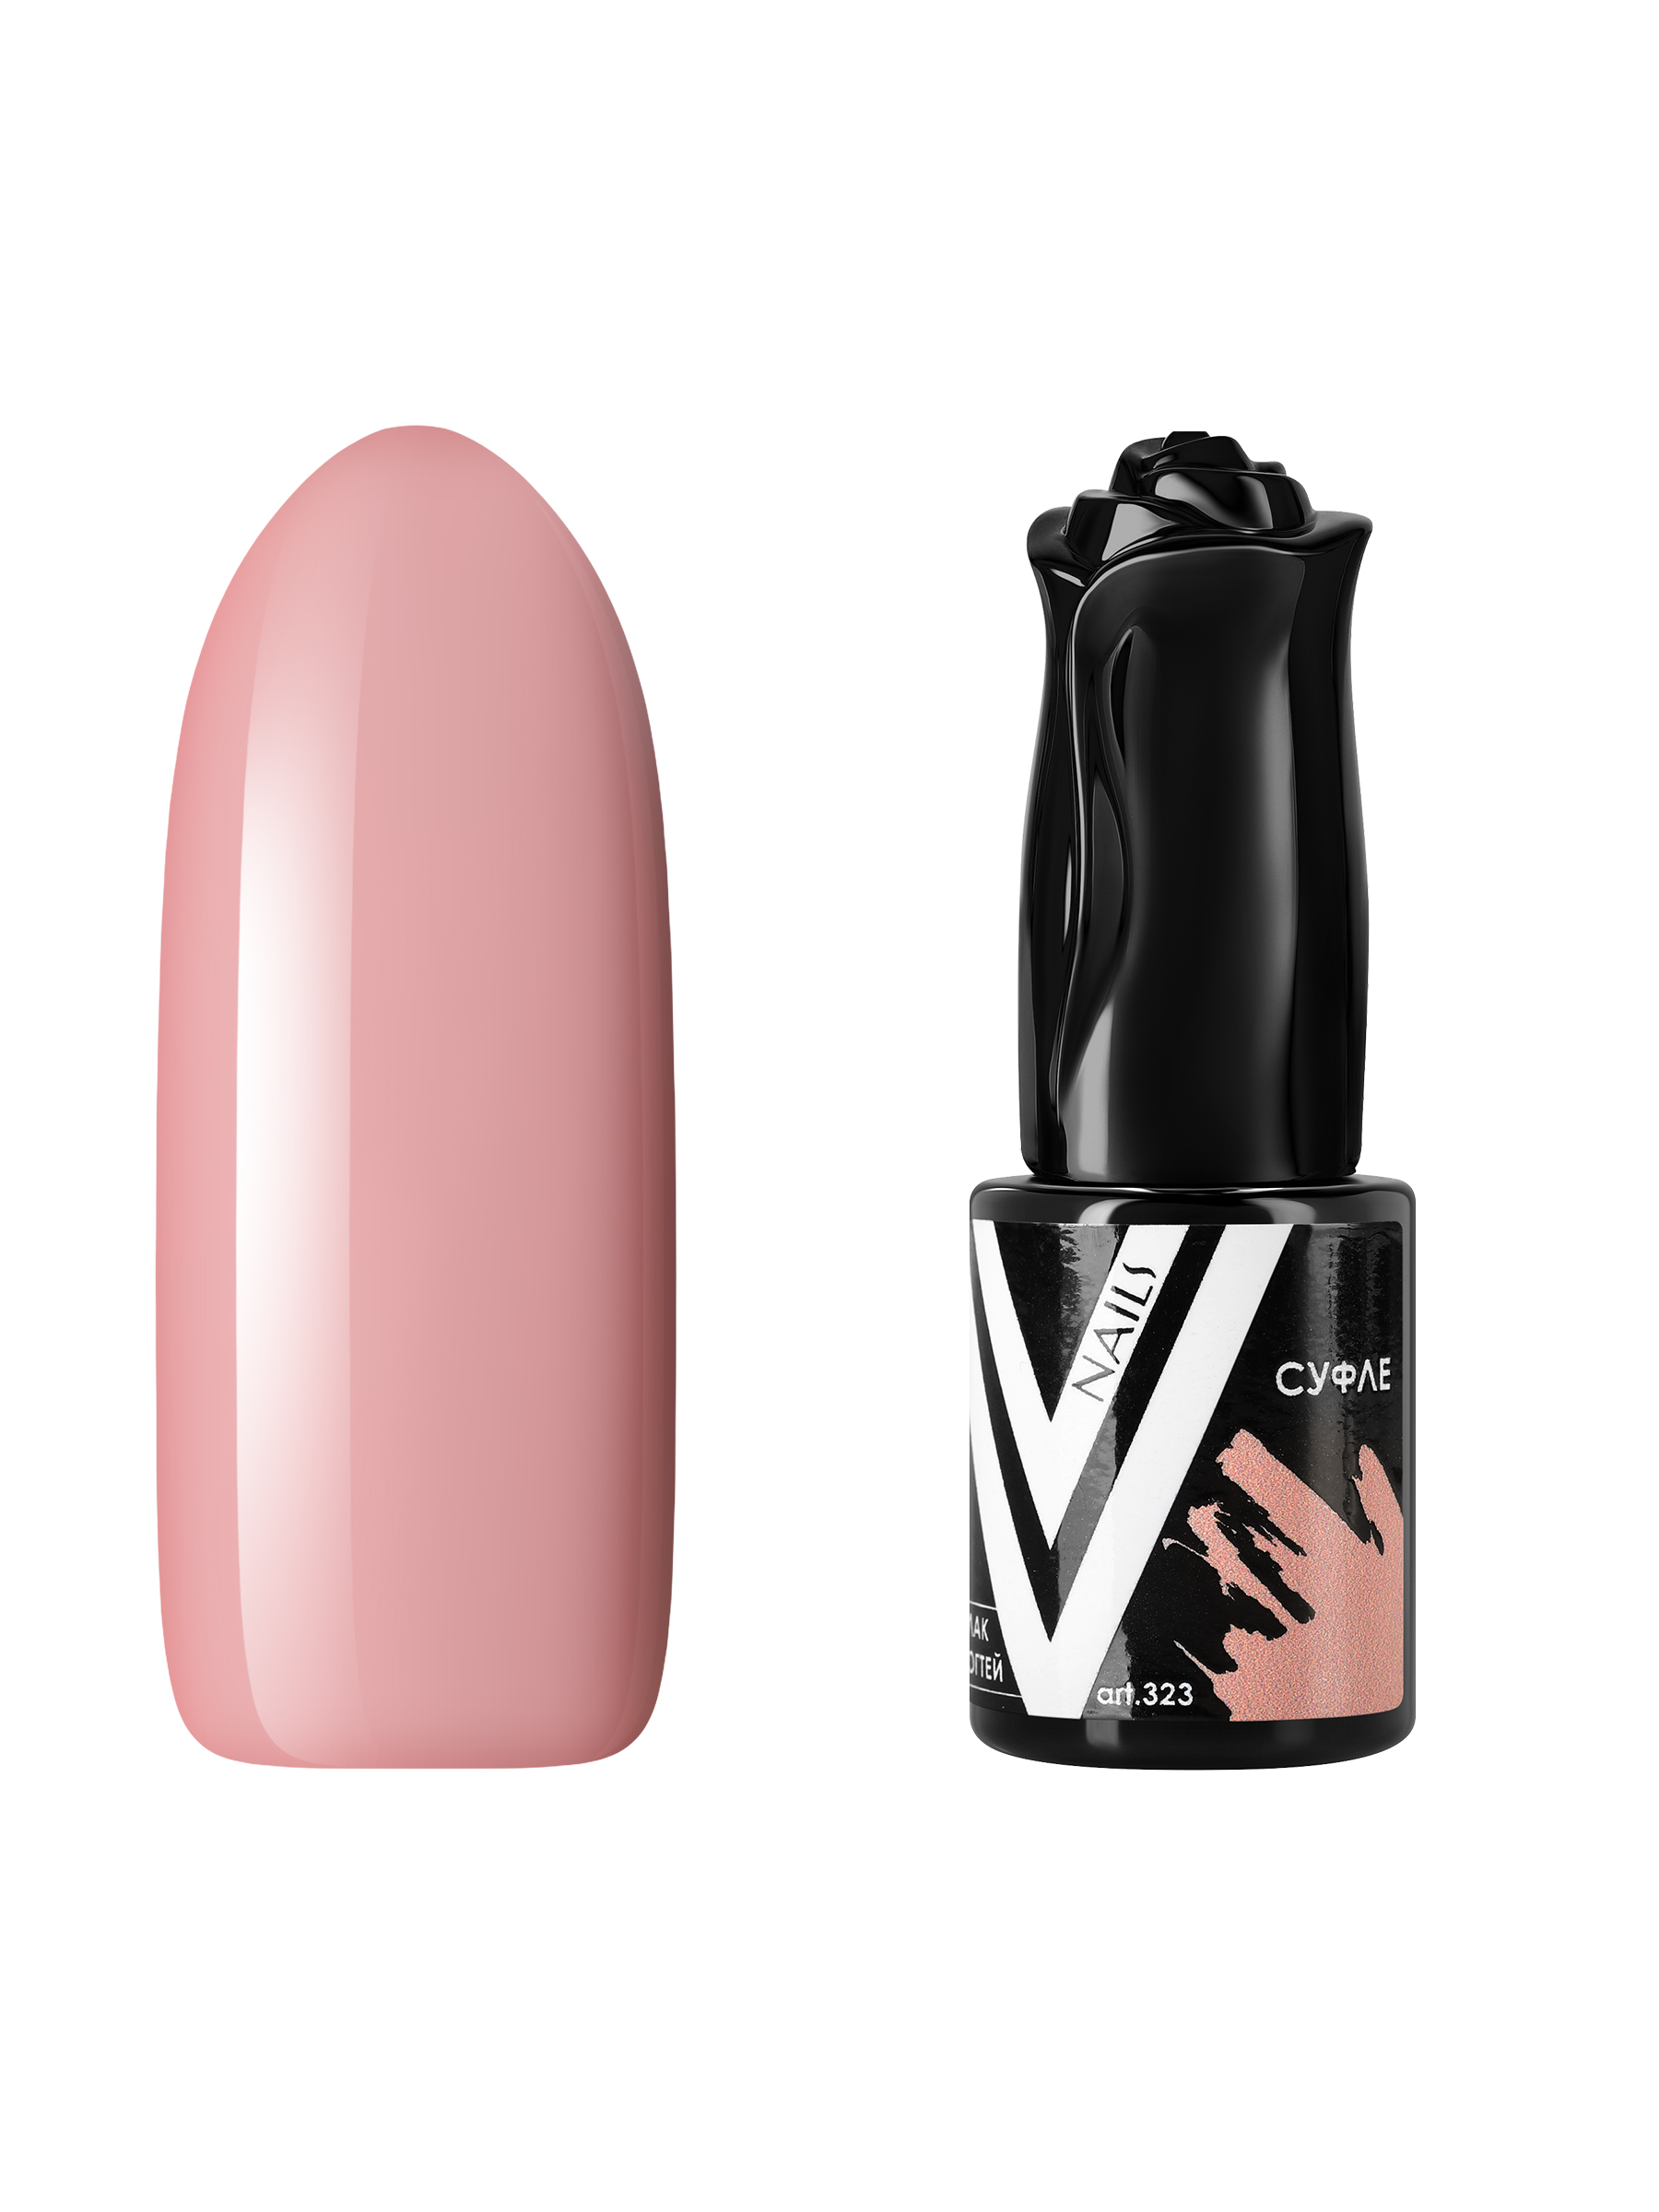 Гель-лак для ногтей Vogue Nails плотный, самовыравнивающийся, светлый, бежевый, 10 мл